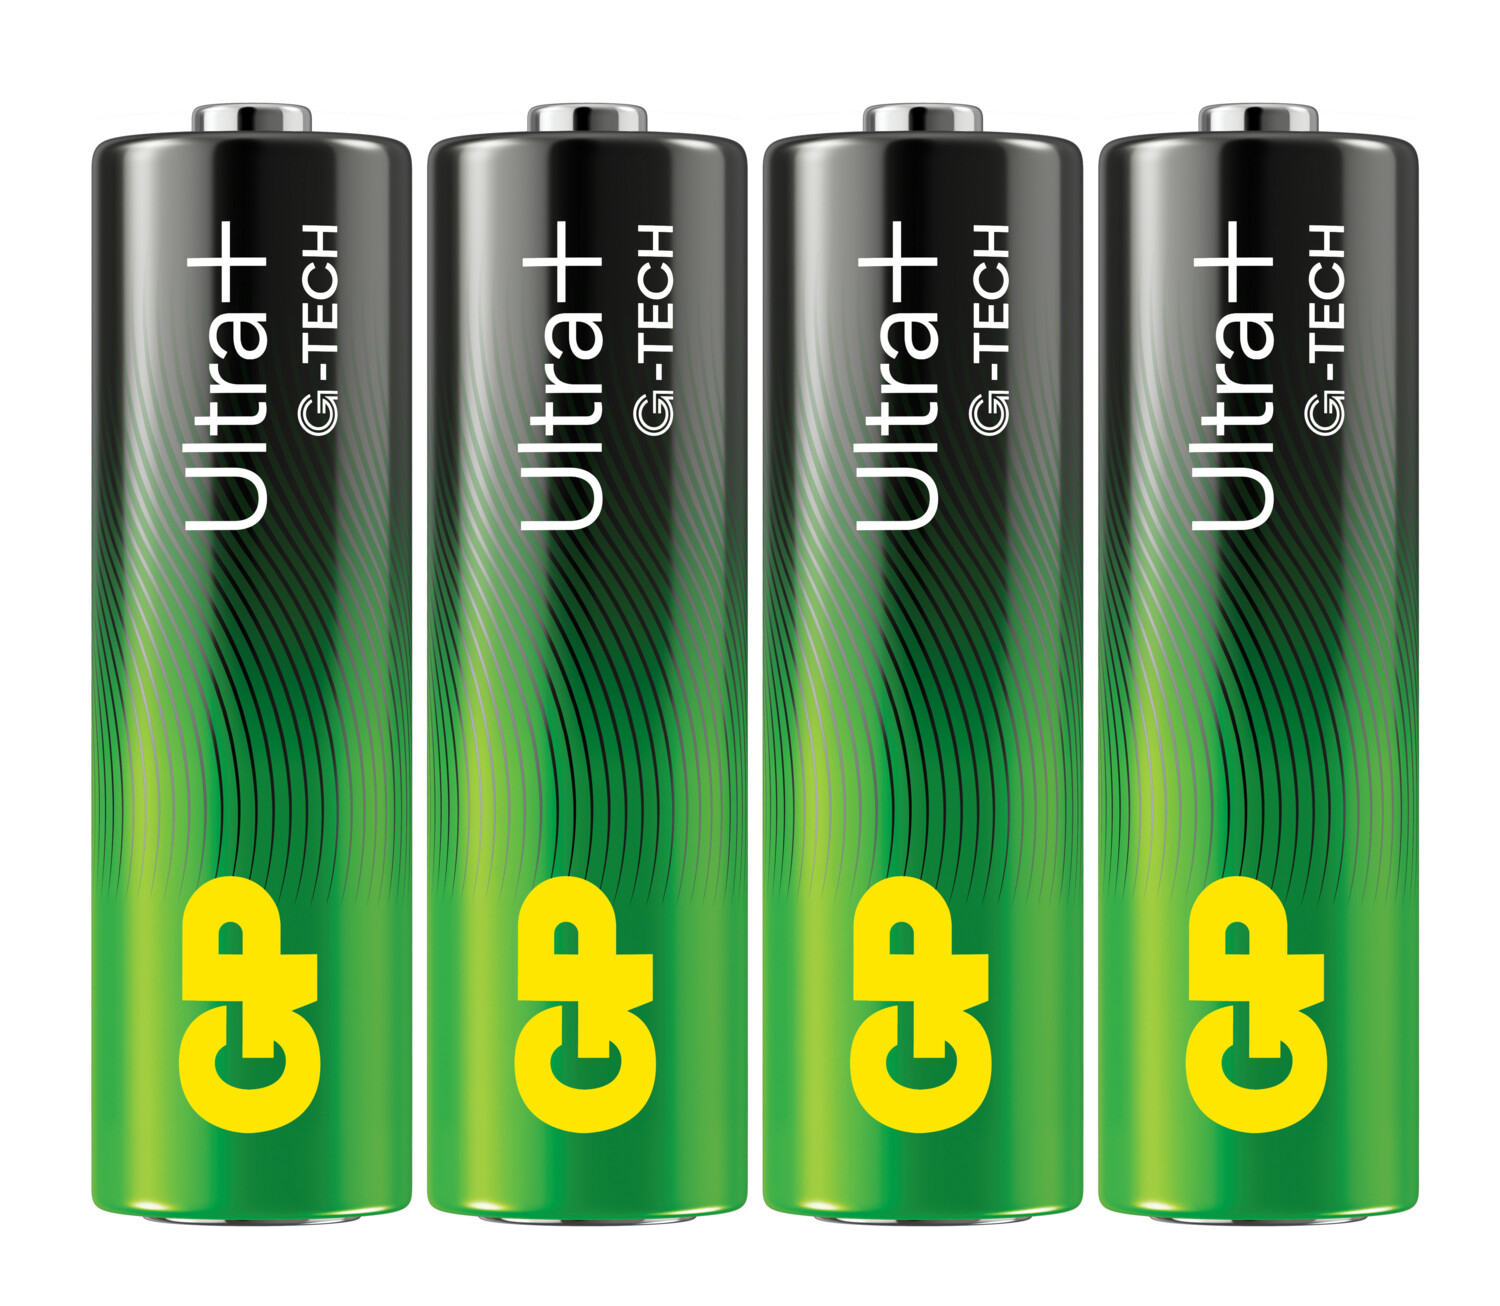 Pile AA ou LR6 lithium extra longue durée (8 ans)